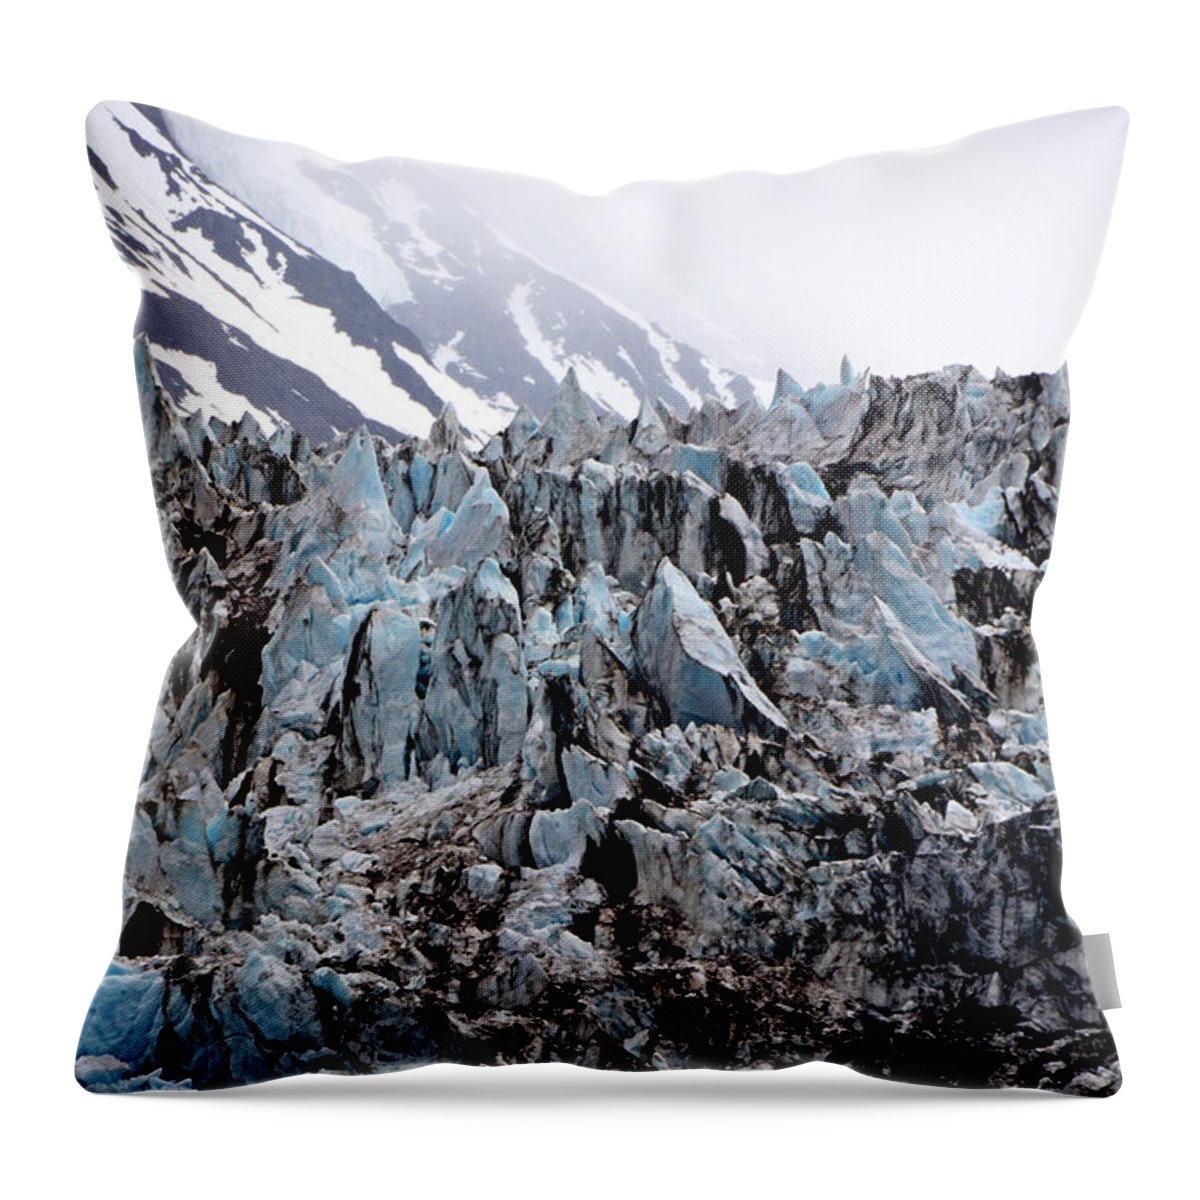 Alaska Throw Pillow featuring the photograph Glaciers Closeup - Alaska by Lorenzo Cassina